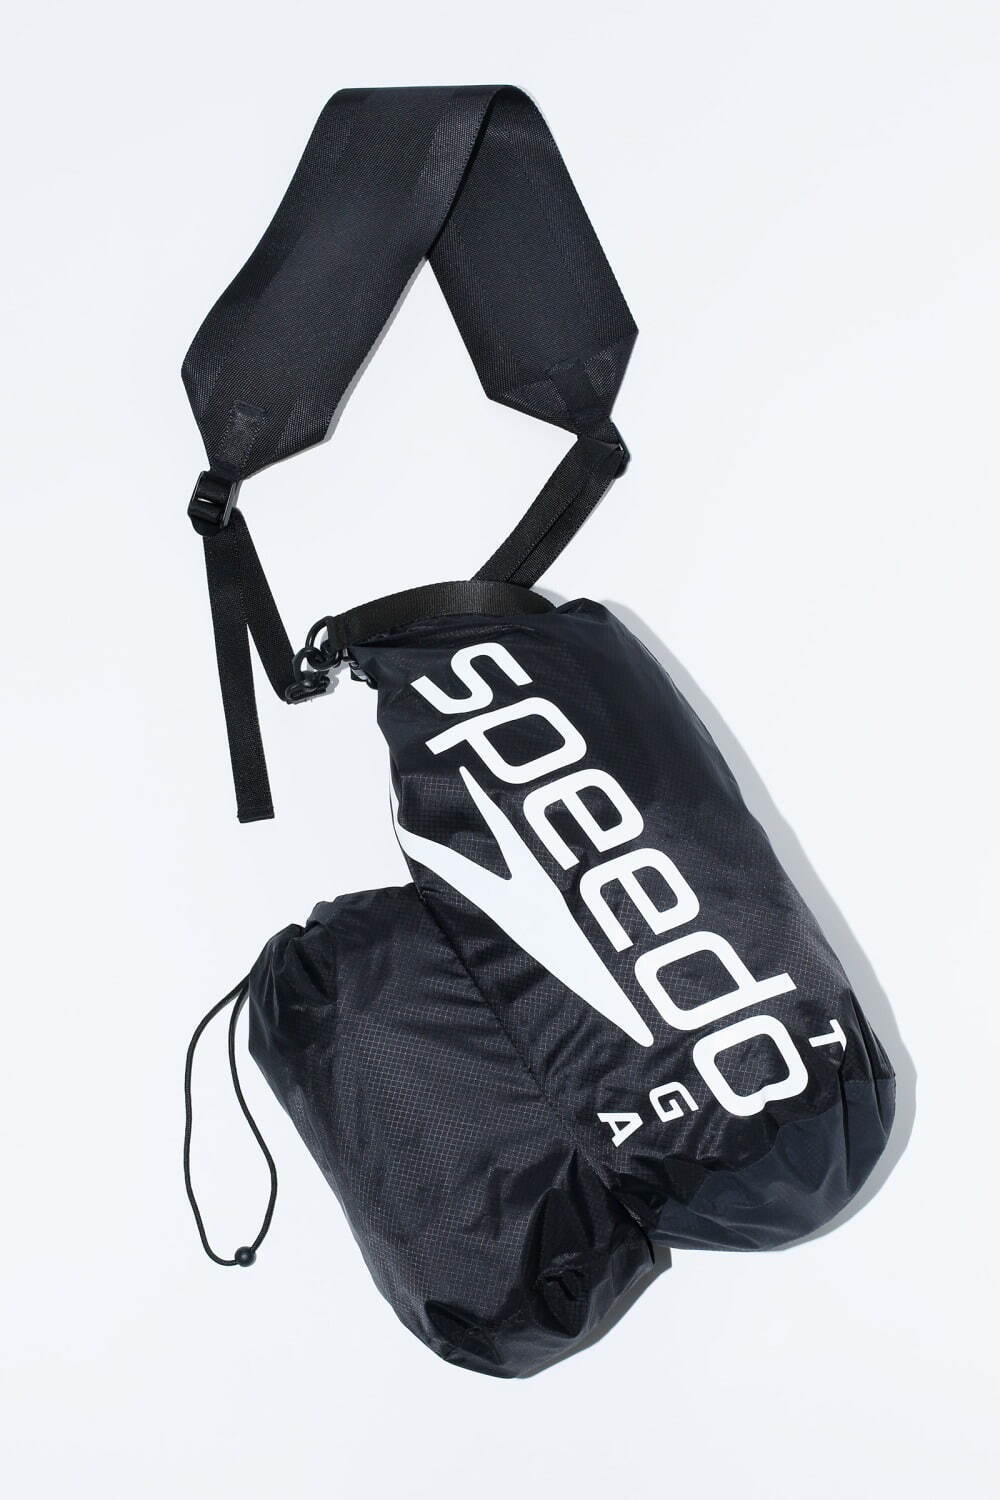 Shoulder bag SPEEDO SP 14,300円(税込)